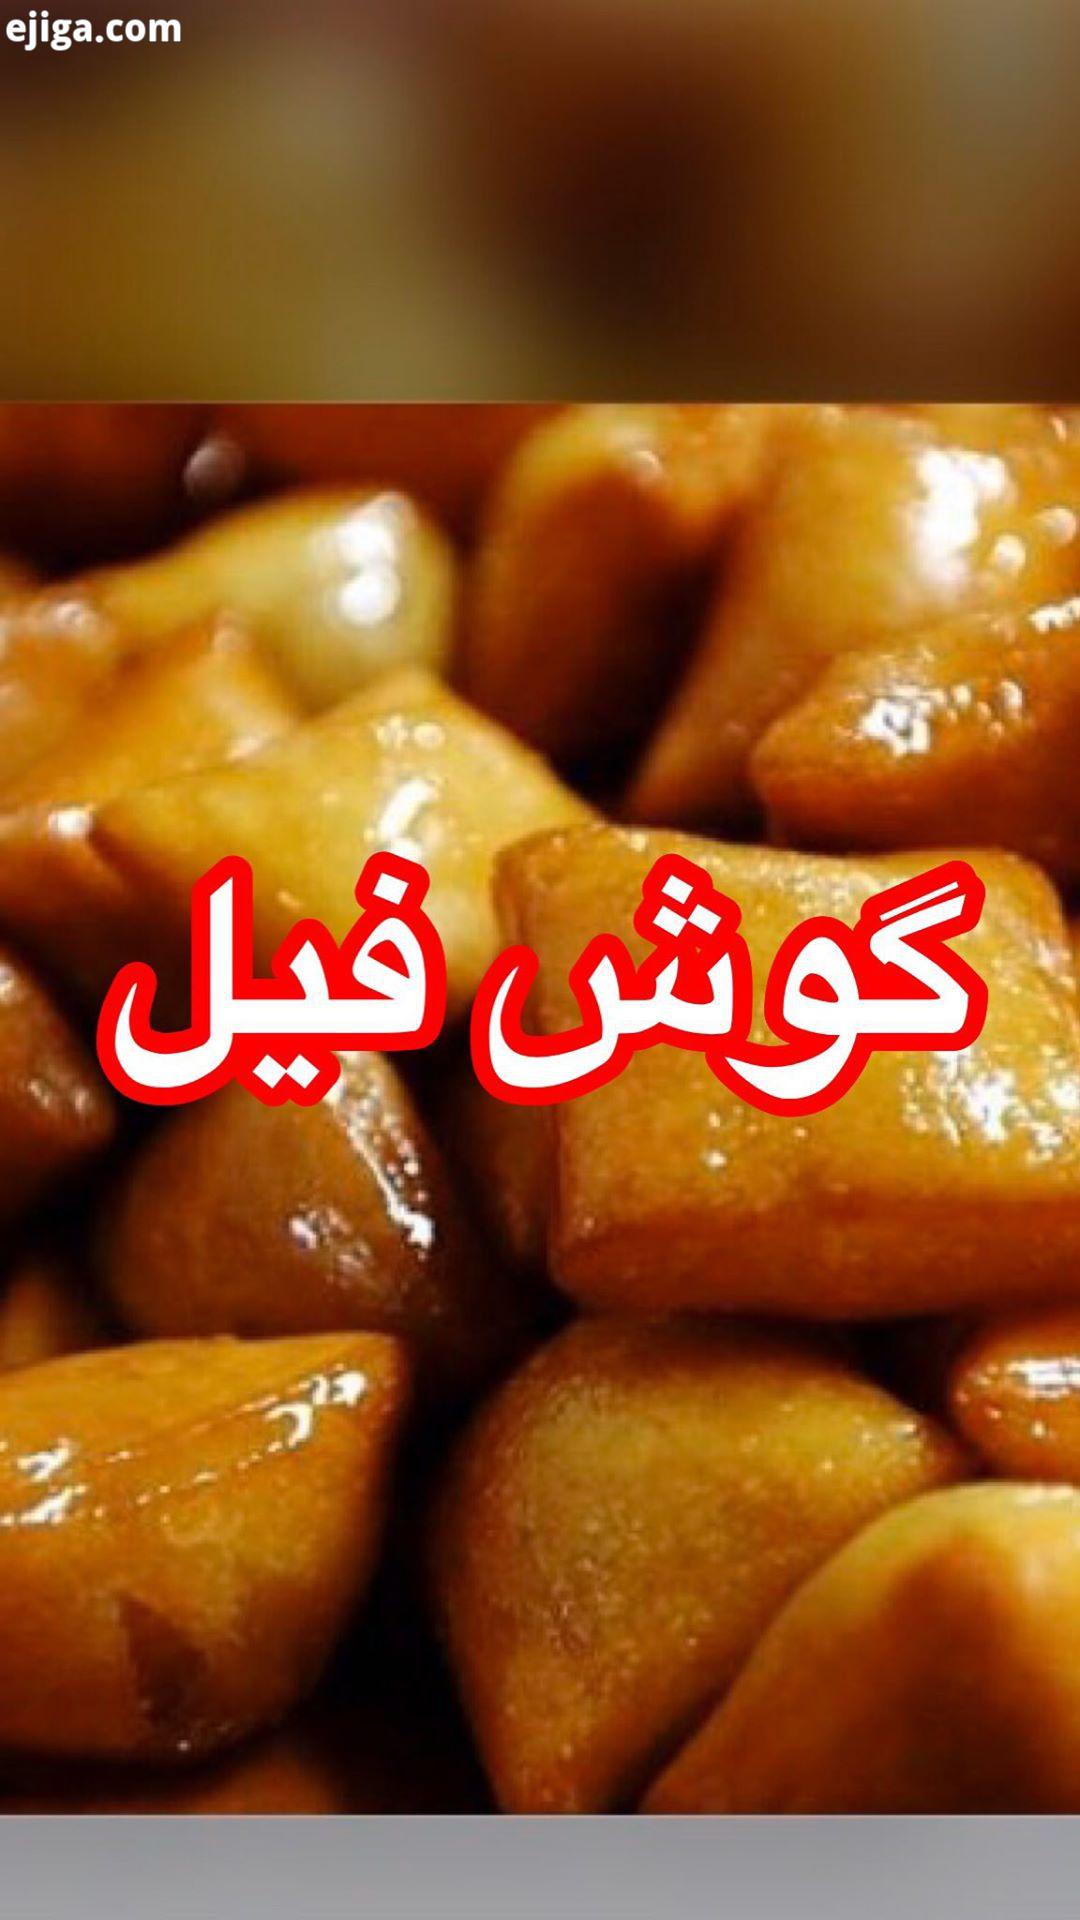 گوش فیل گوش فیلf گوشفیل گوشفیل خانگى گوشفیل بزن آشپزی آشپزی ایرانی اشپزی خونگی غذای ایرانی غذای خانگ